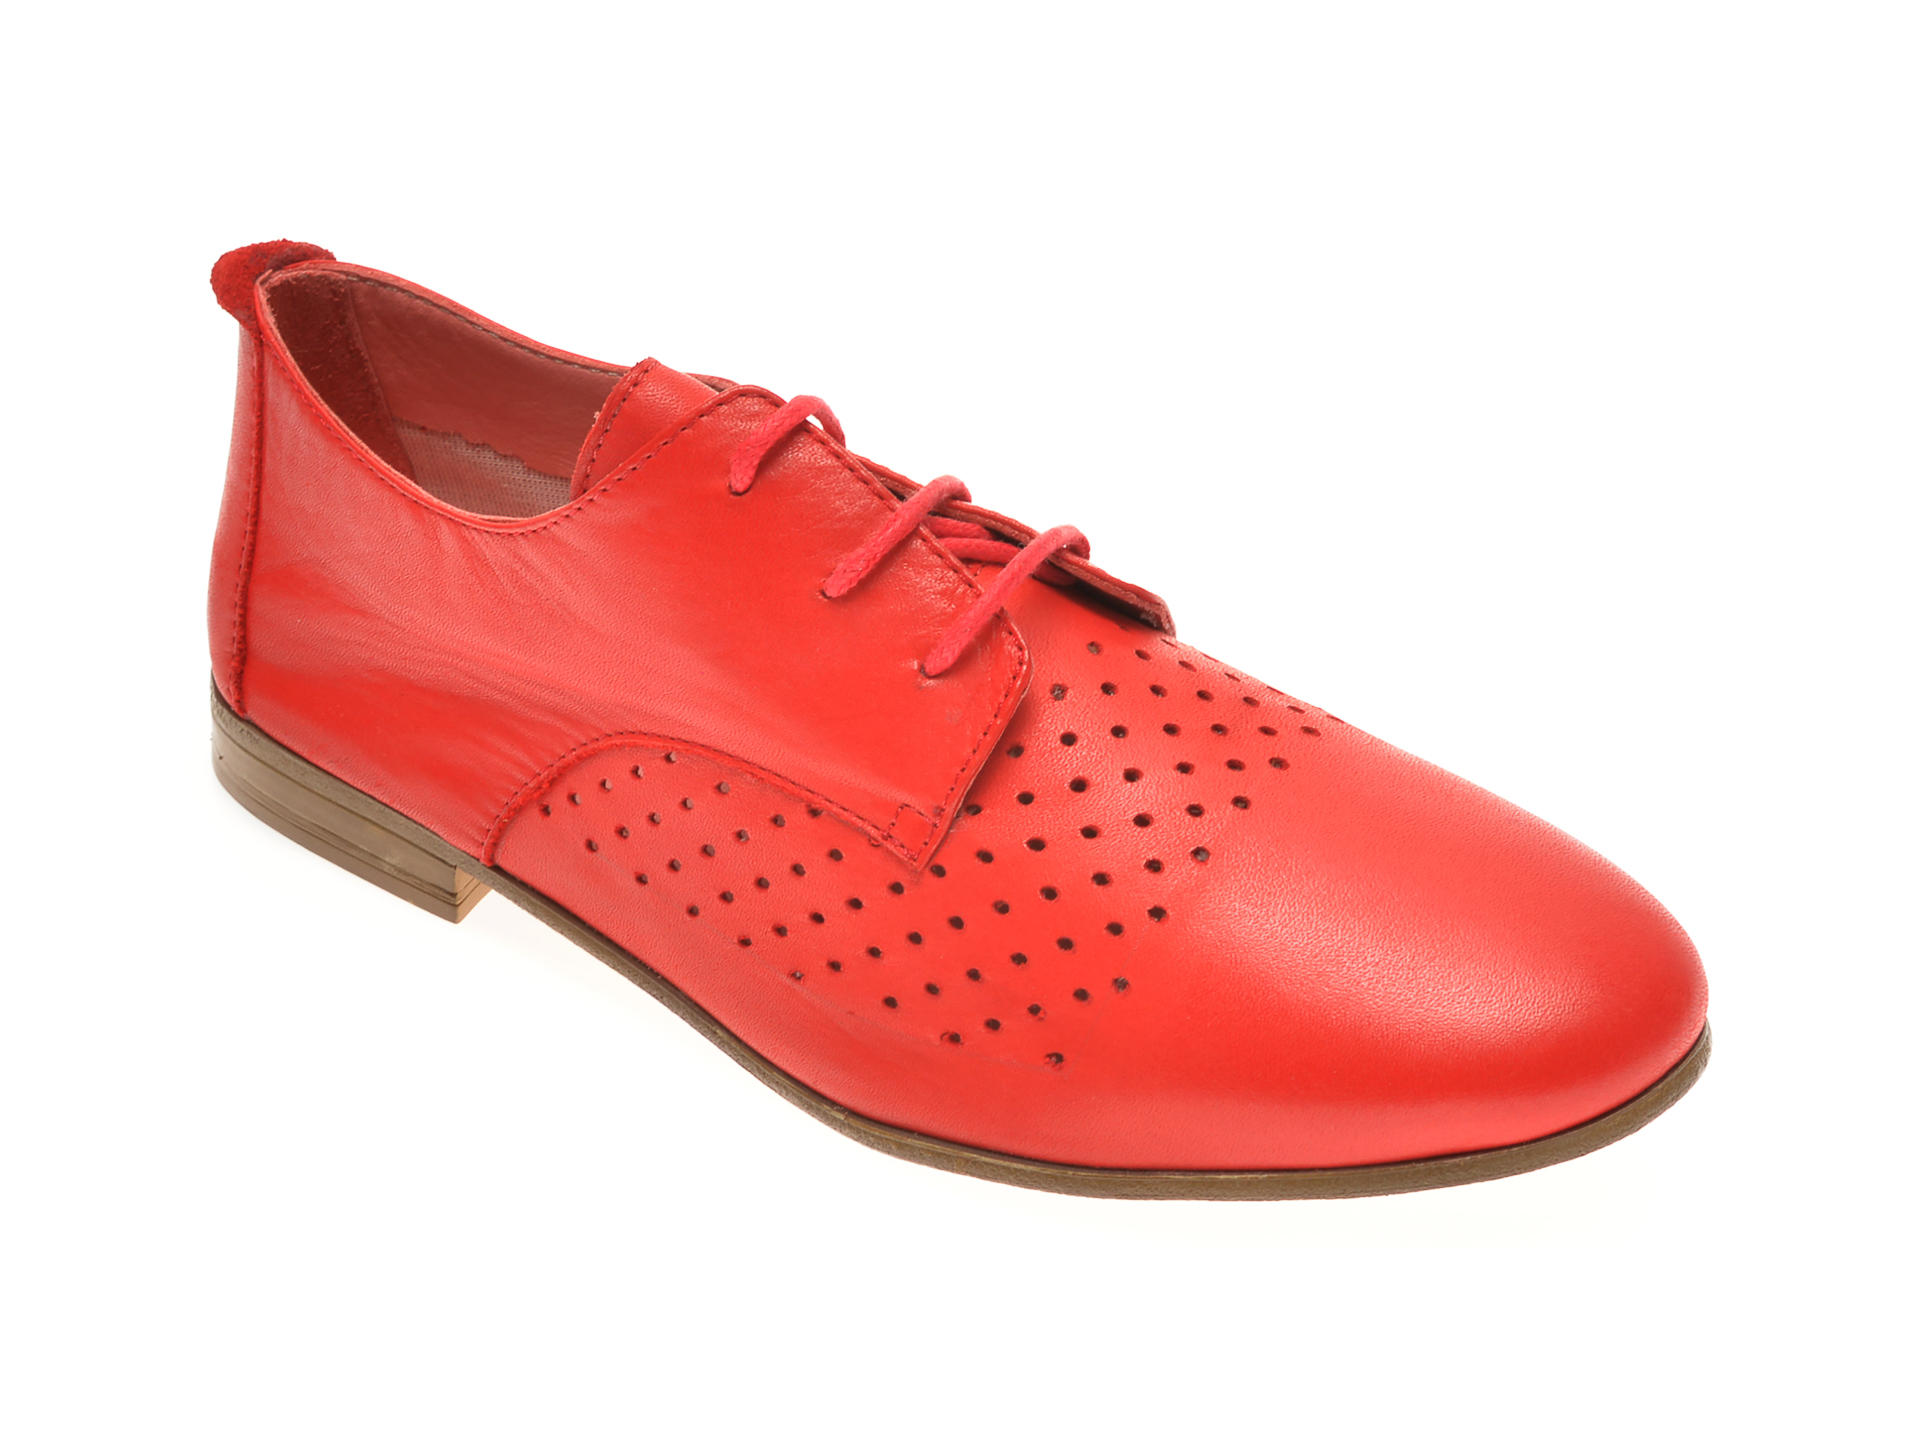 Pantofi BABOOS rosii, 1106, din piele naturala